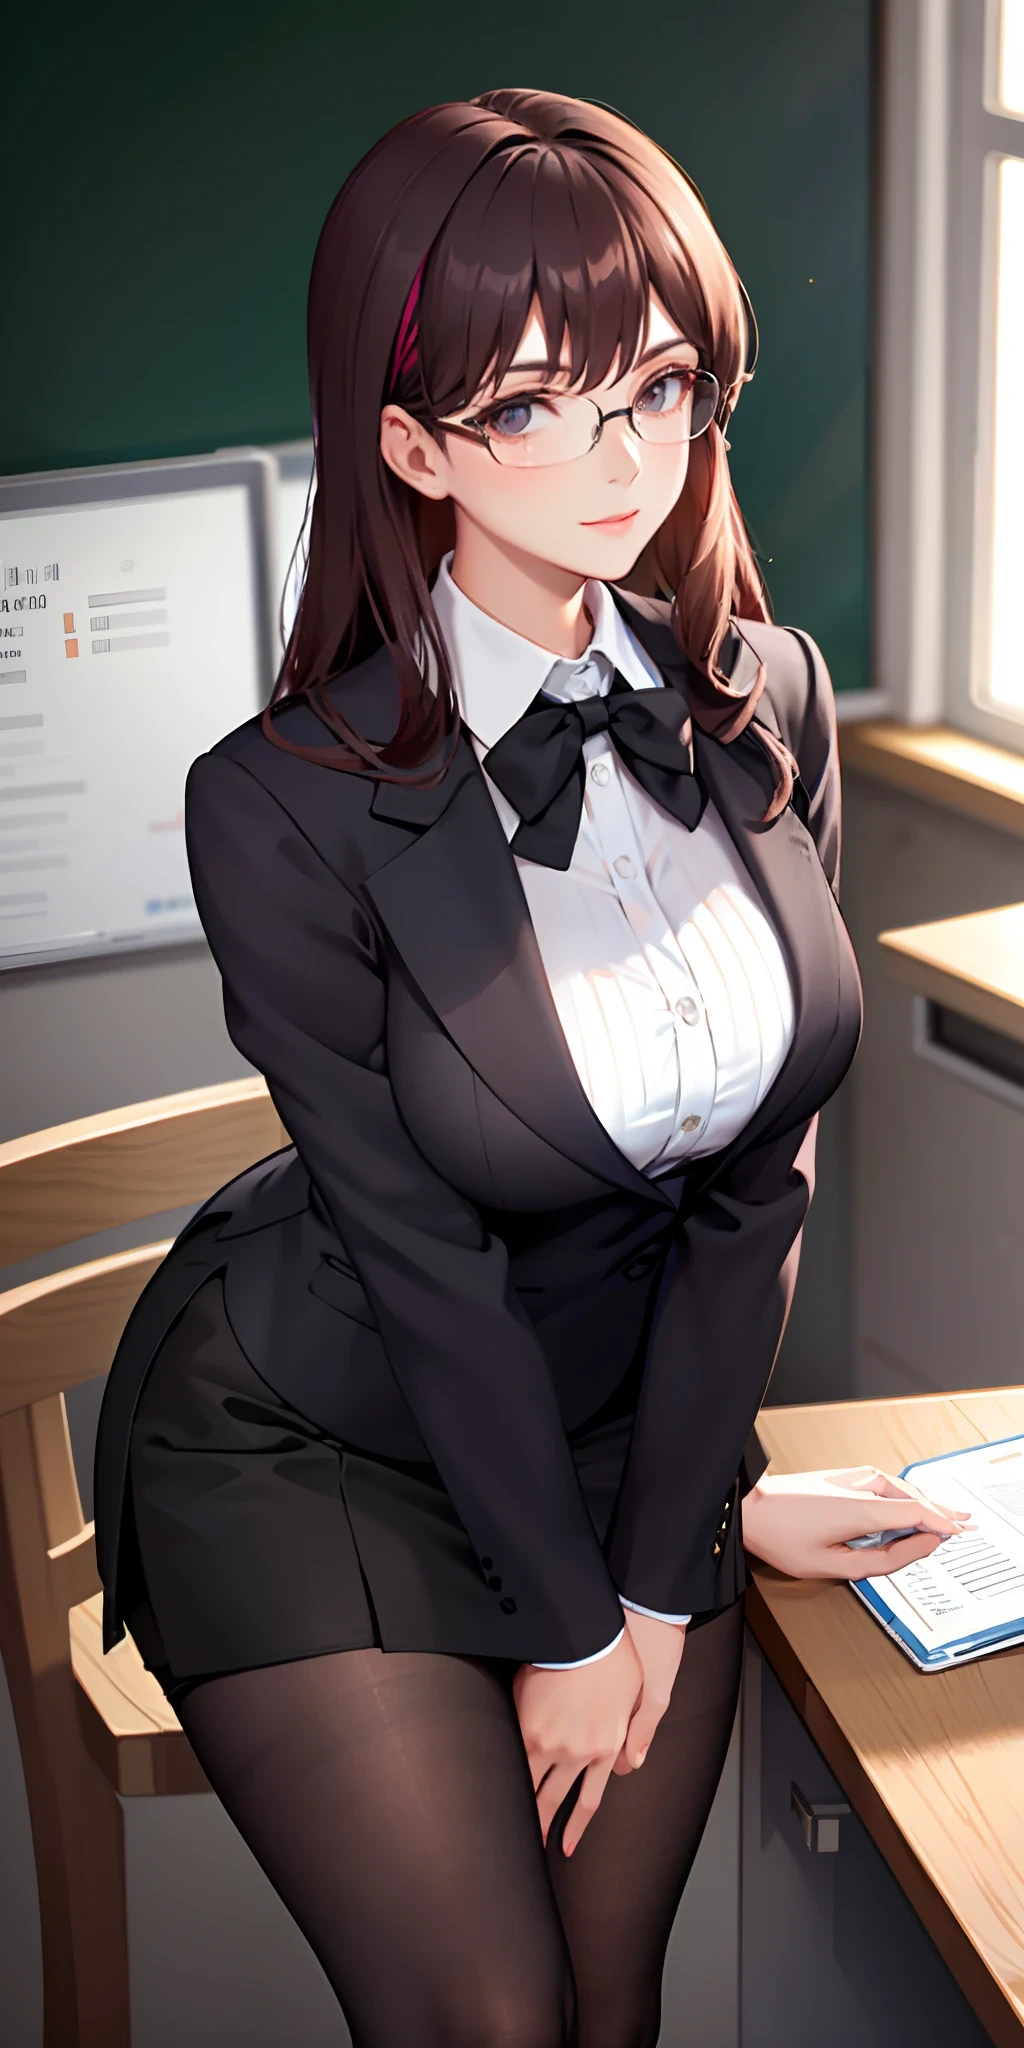 上品で洗練されたメガネの先生が、短いスカートと黒いストッキングでOLに扮する。, 彼女の豊かな胸を露わにして